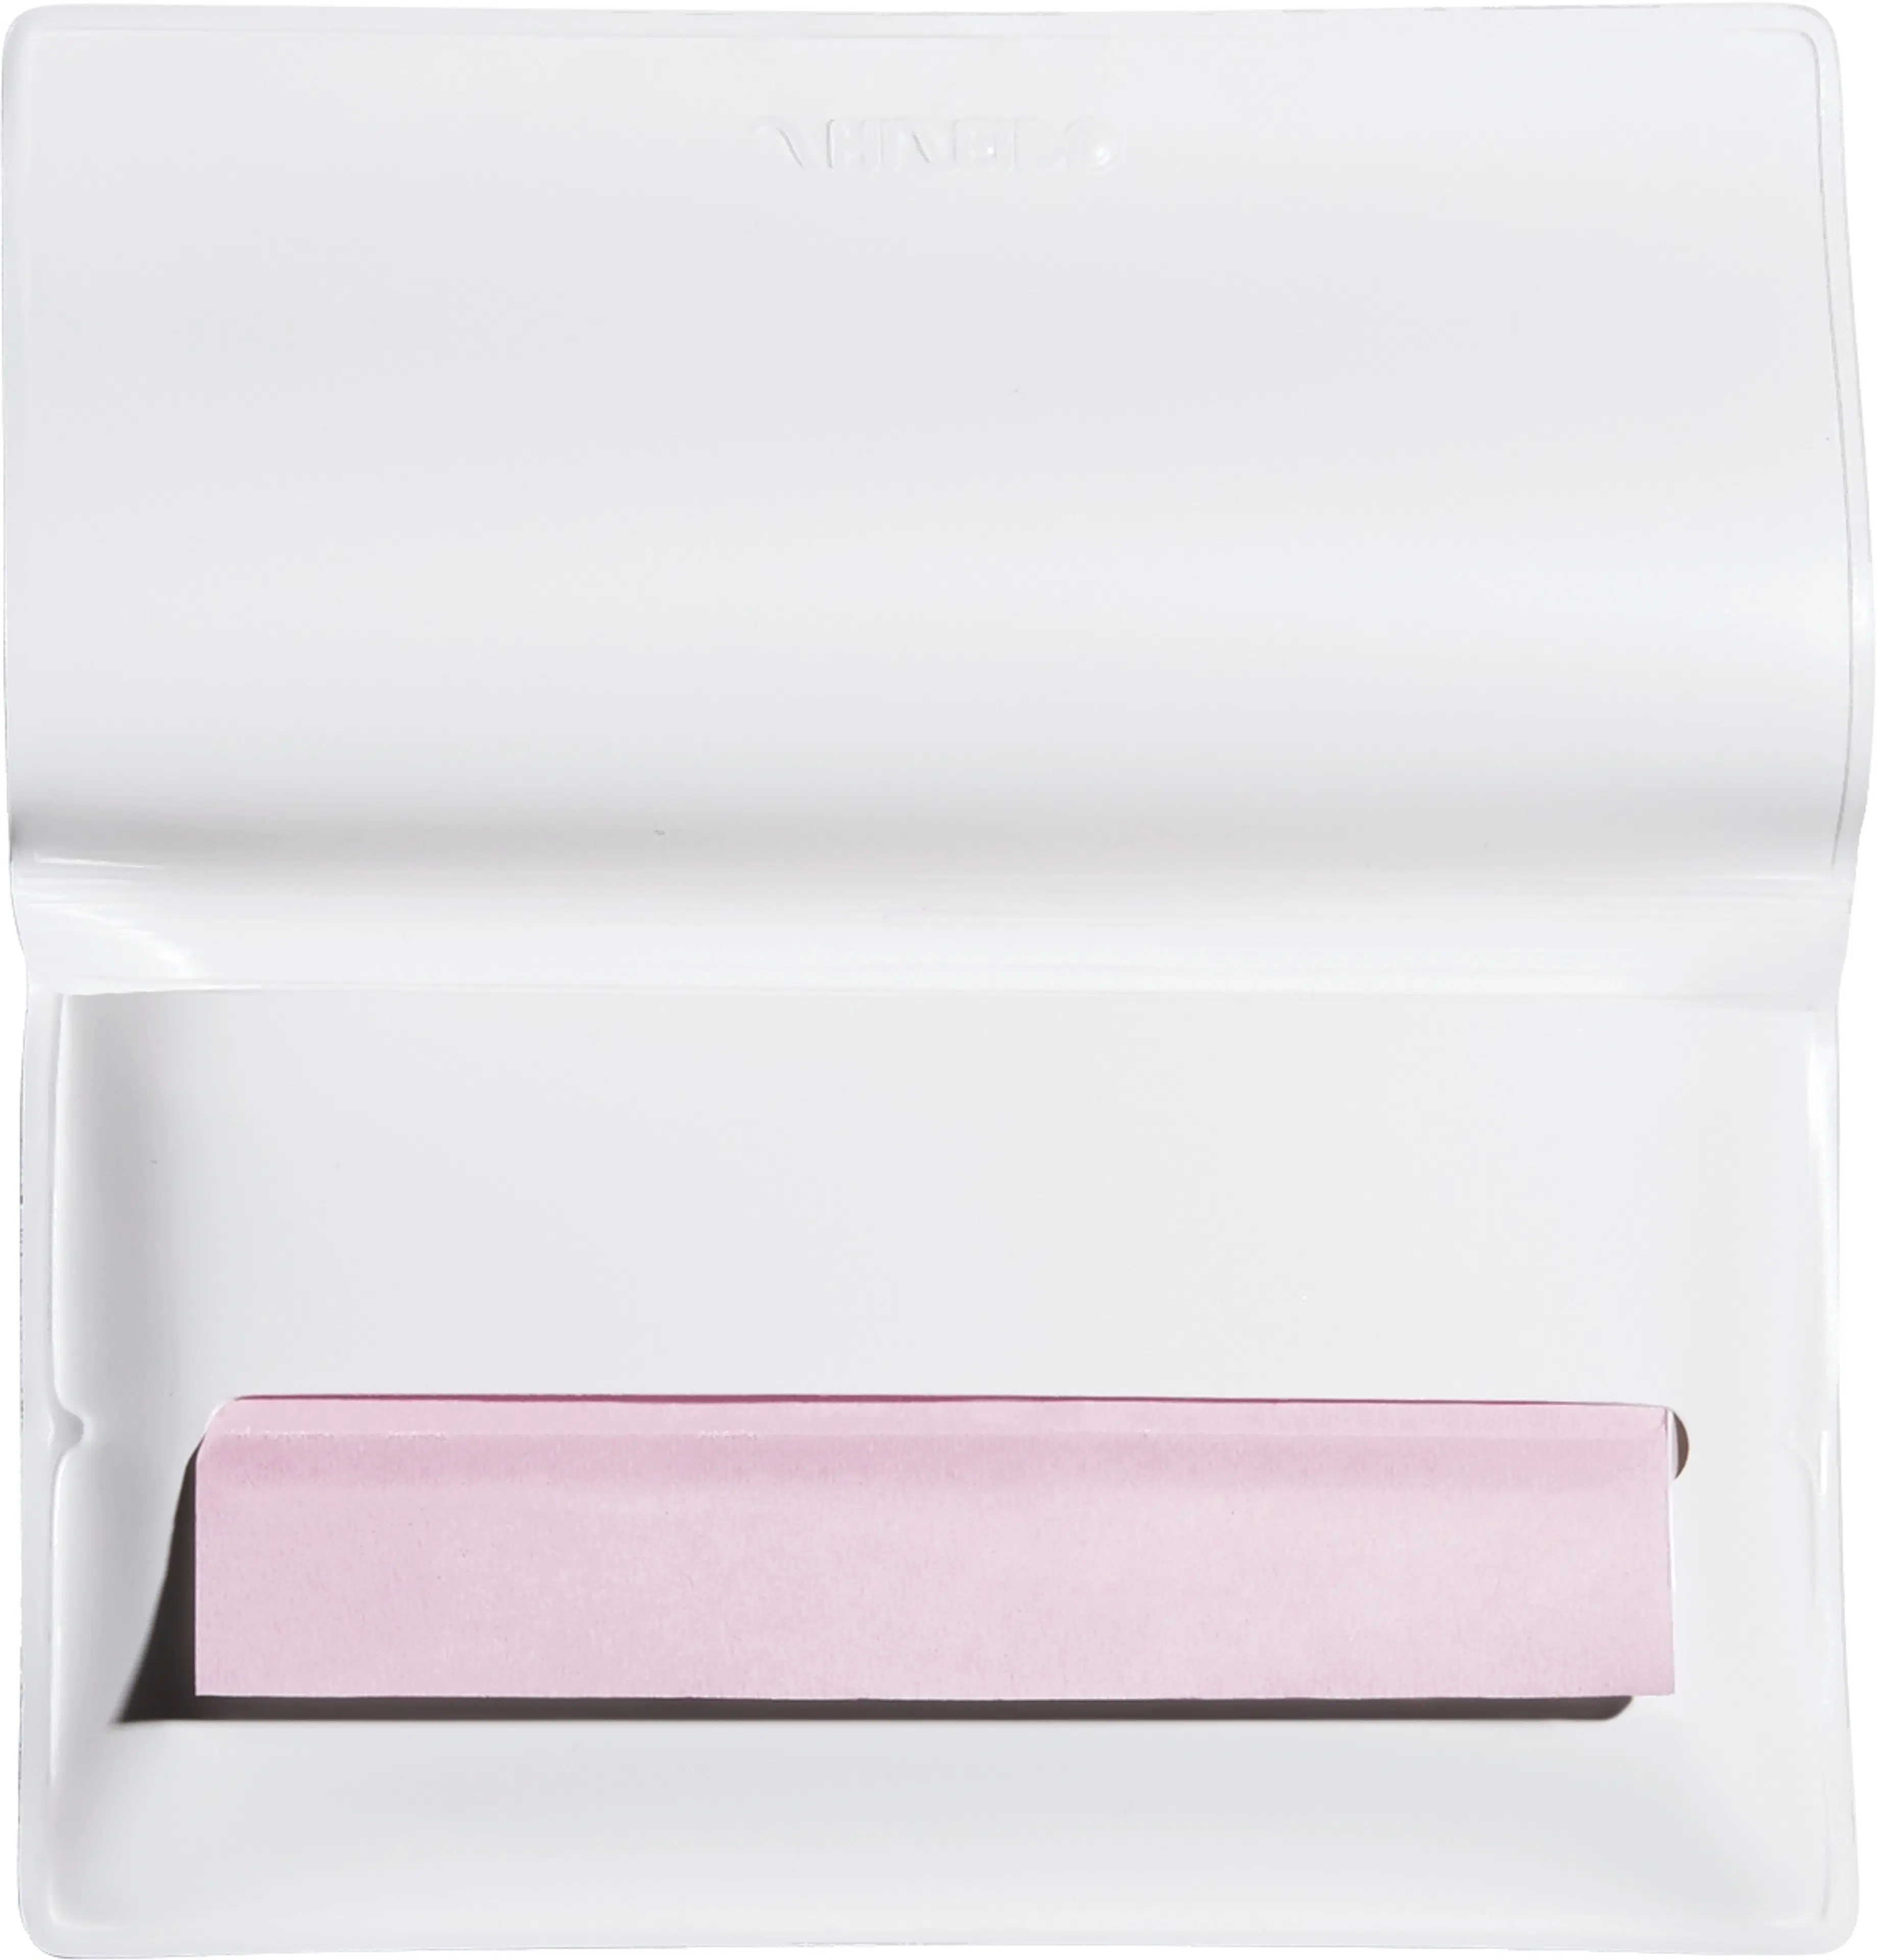 Shiseido Oil-Control Blotting Paper puuteripaperit 100 kpl